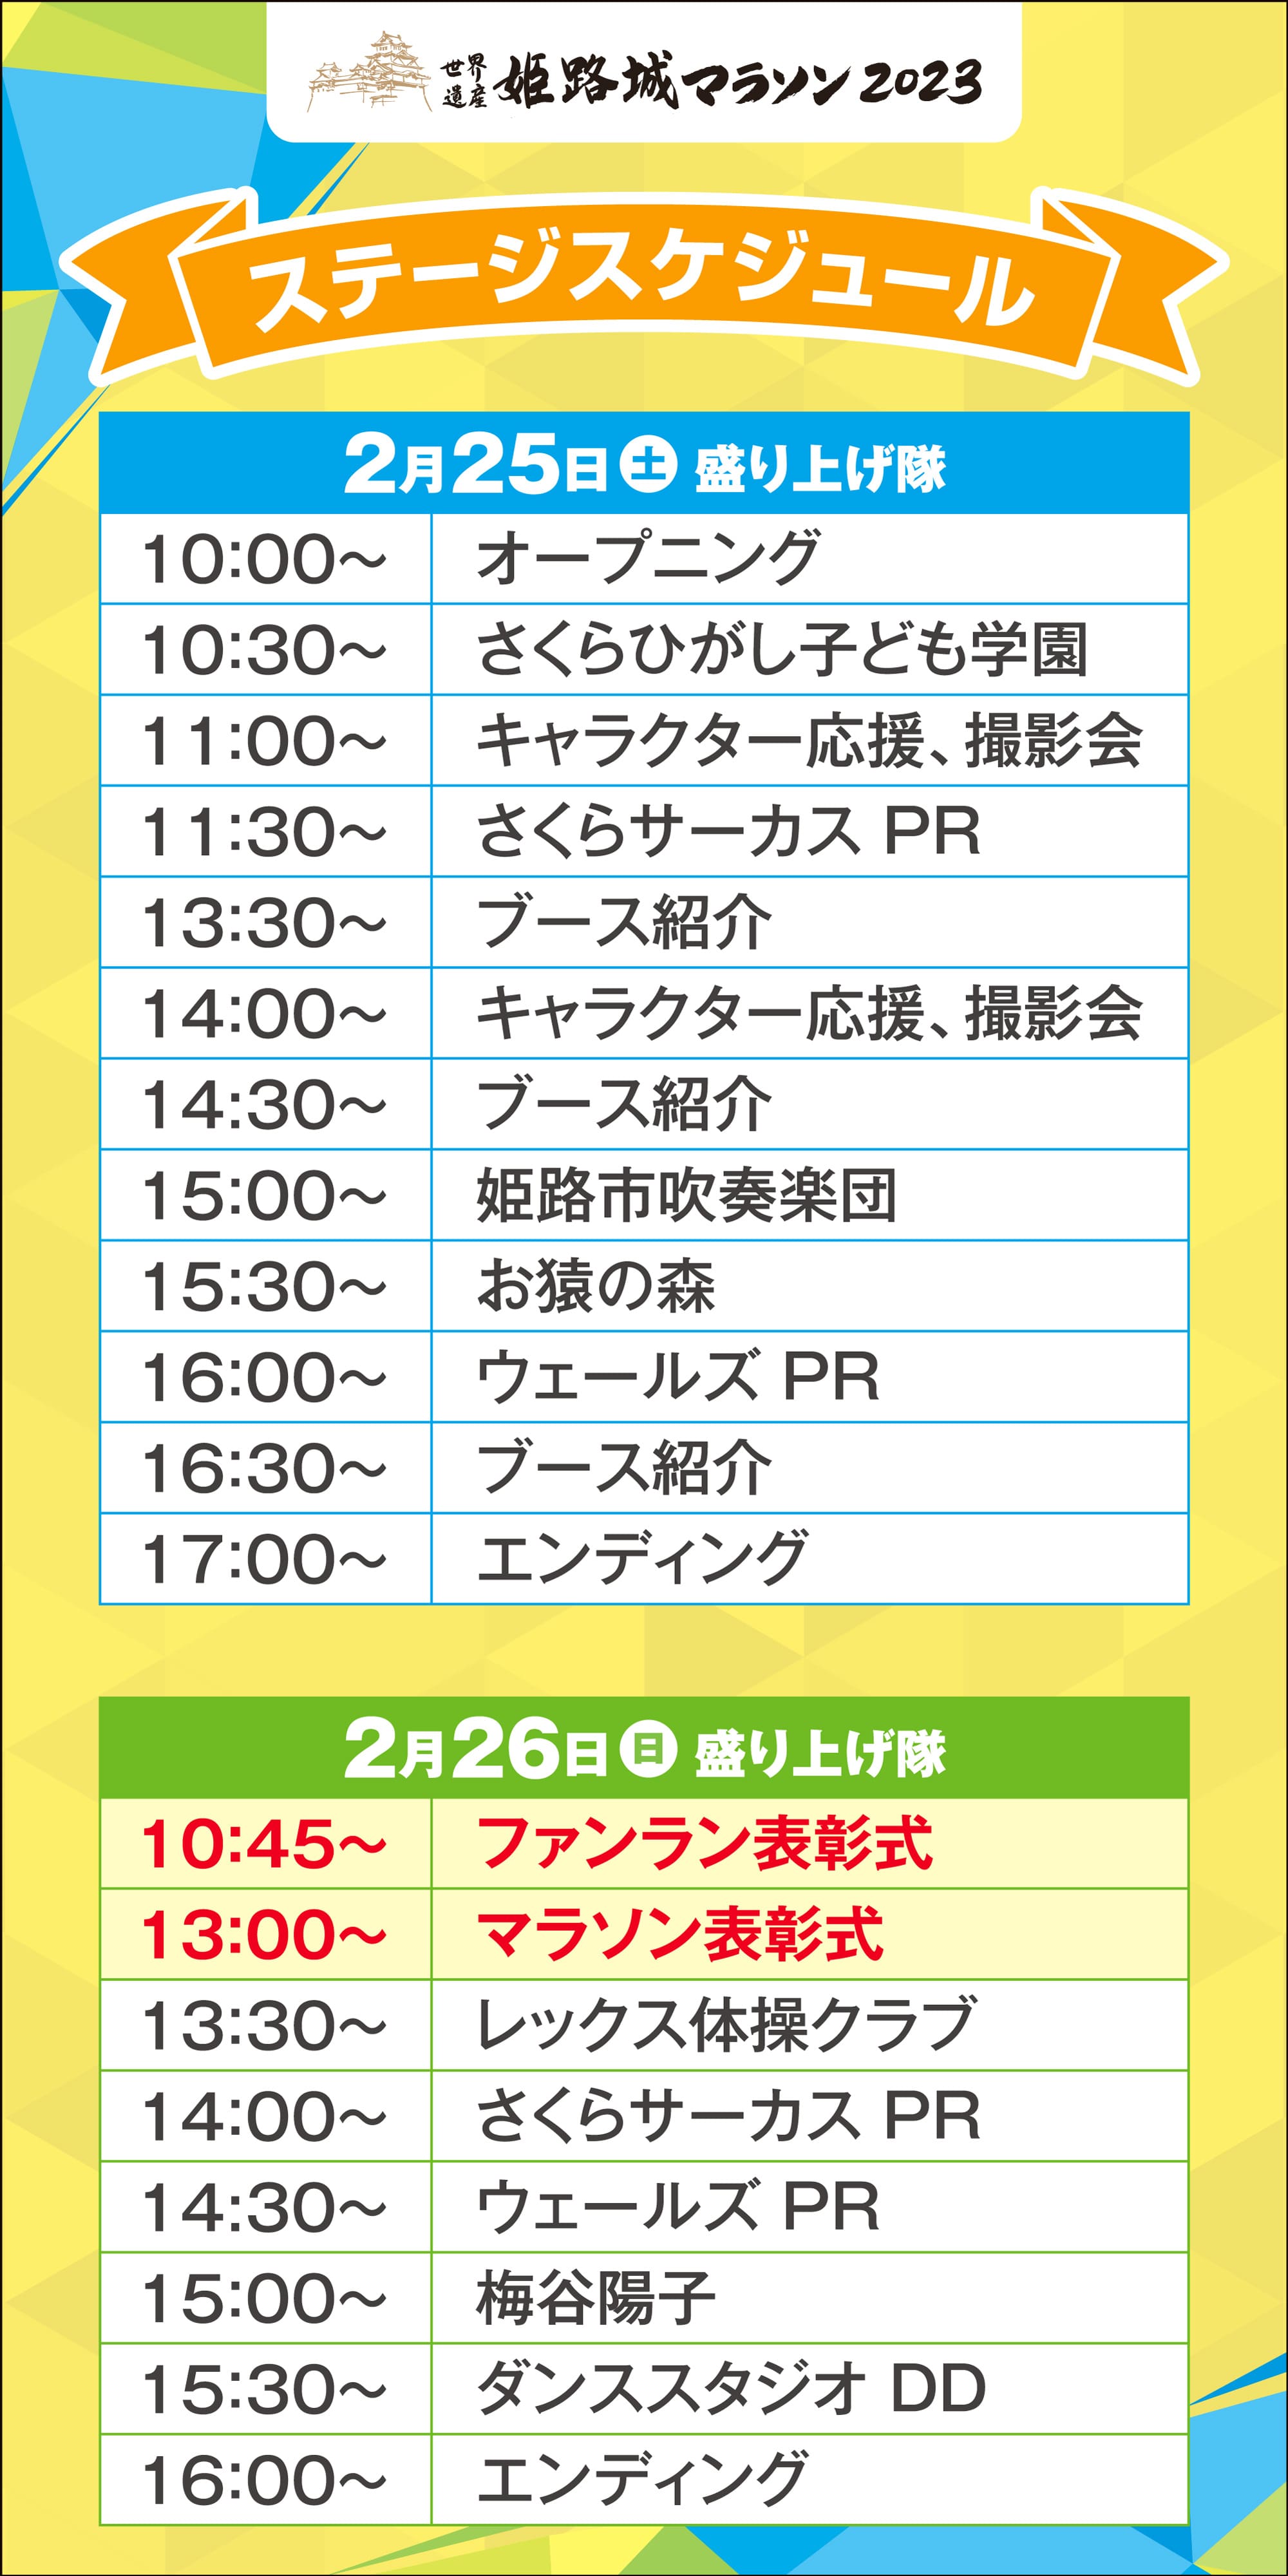 世界遺産姫路城マラソン祭 ステージスケジュール